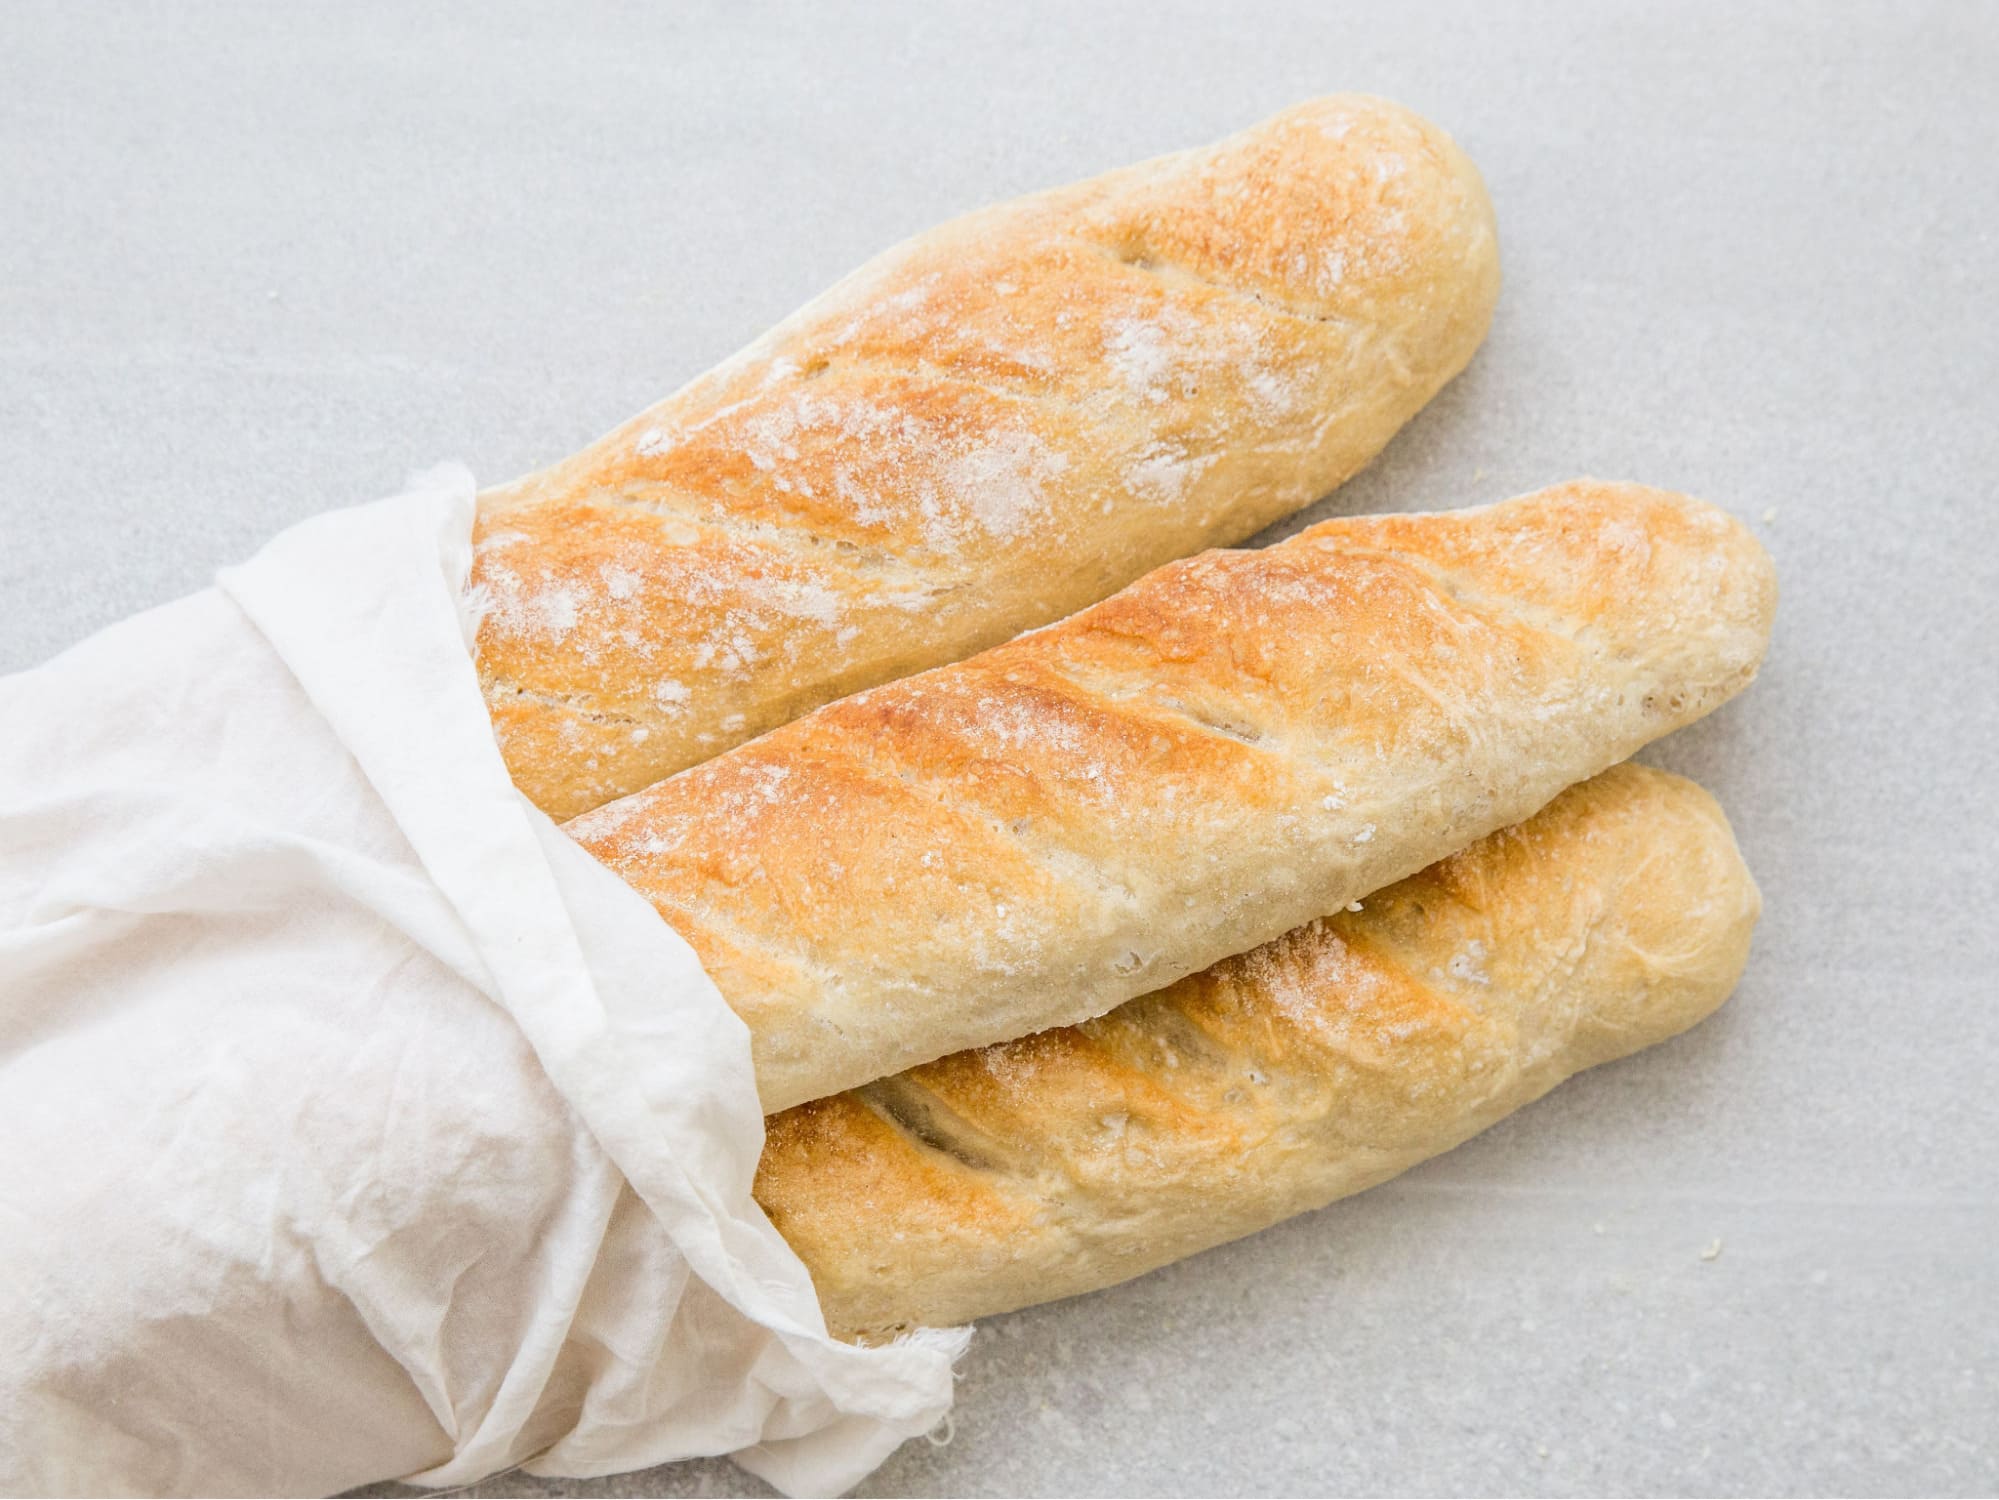 Bánh mì chứa hàm lượng dinh dưỡng cao và giàu năng lượng